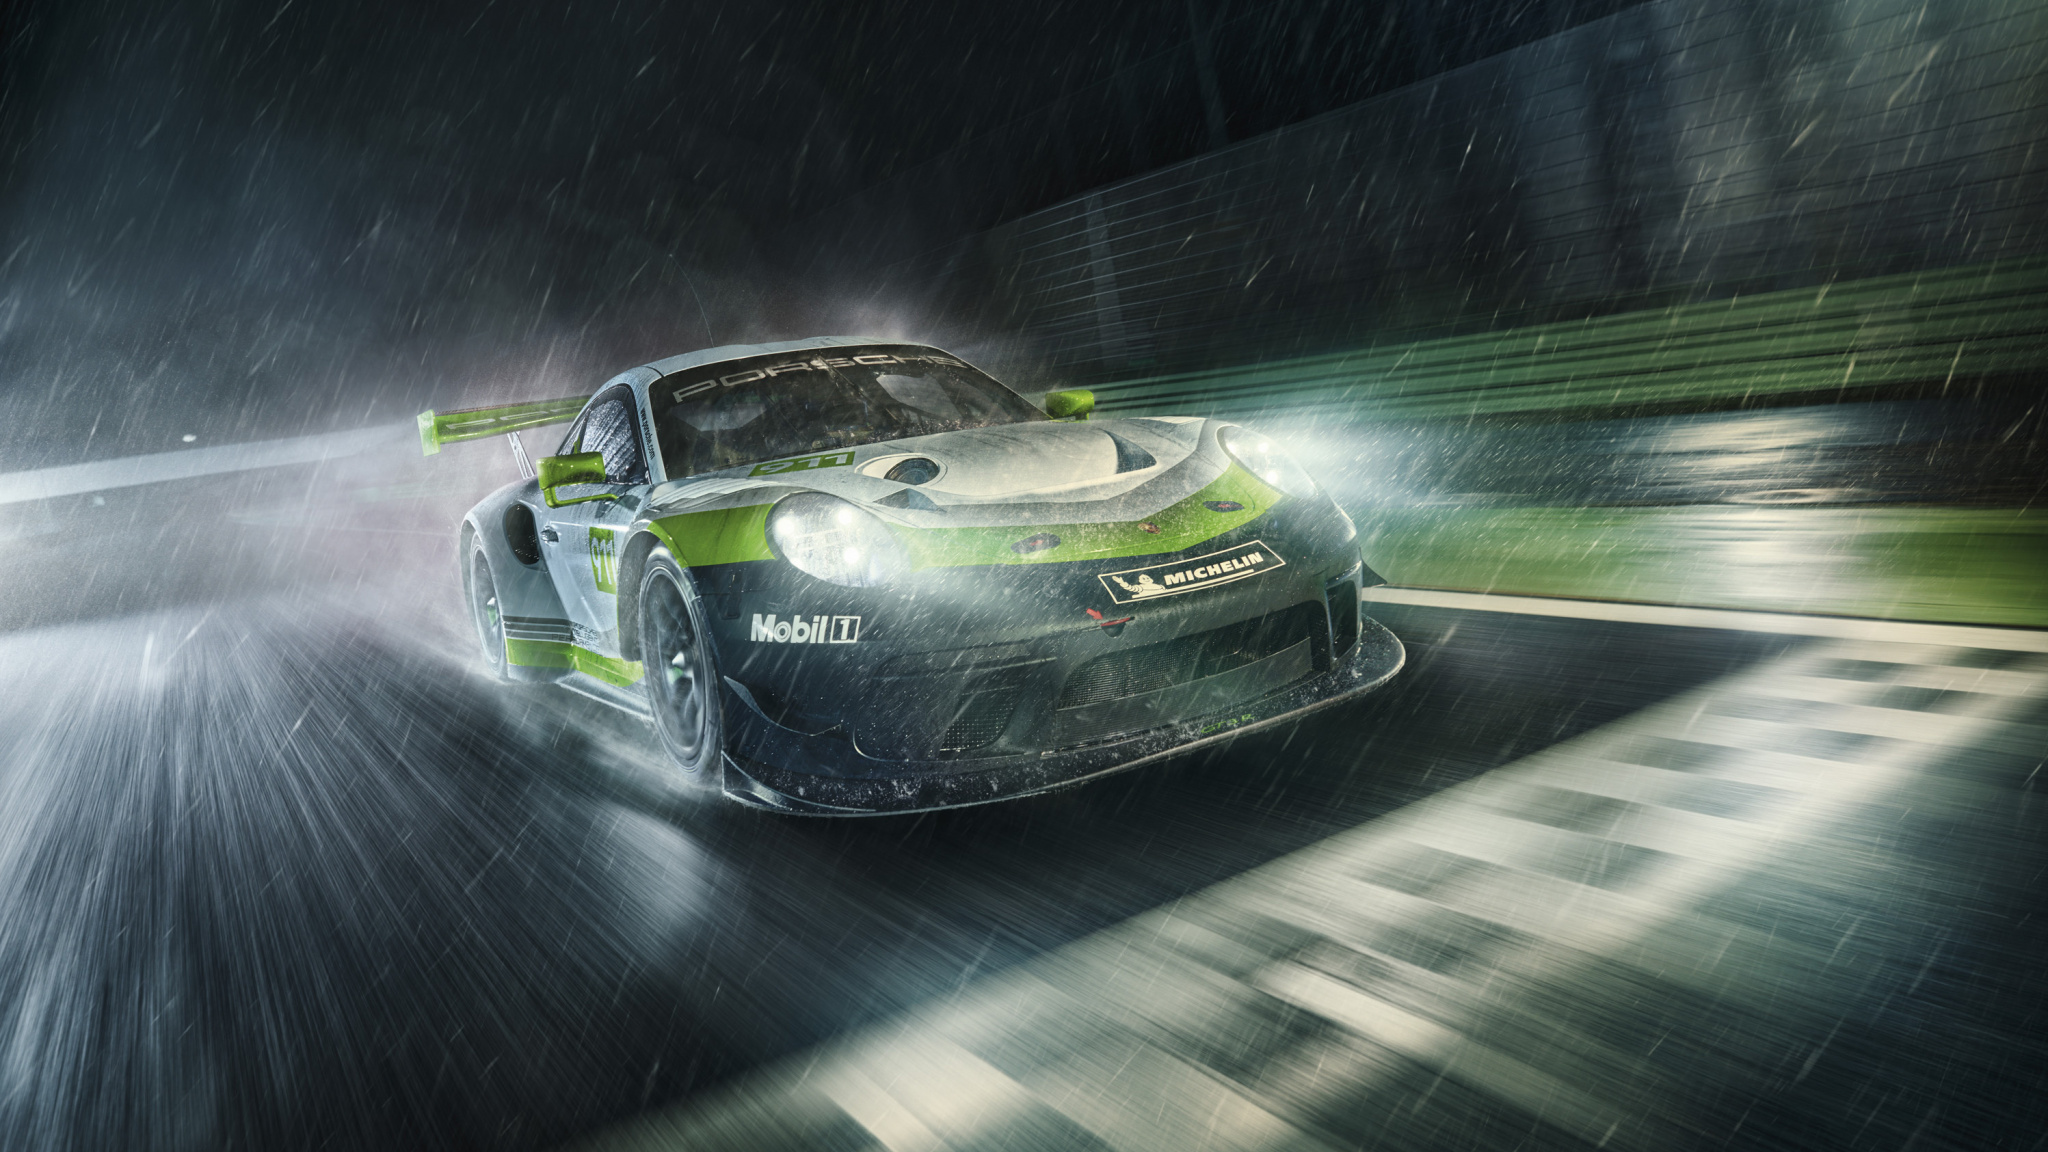 Porsche 911 Gt3 R, Rain Blur, Sports Car, 2018, Wallpaper - Porsche 911 Gt3 R 2019 , HD Wallpaper & Backgrounds